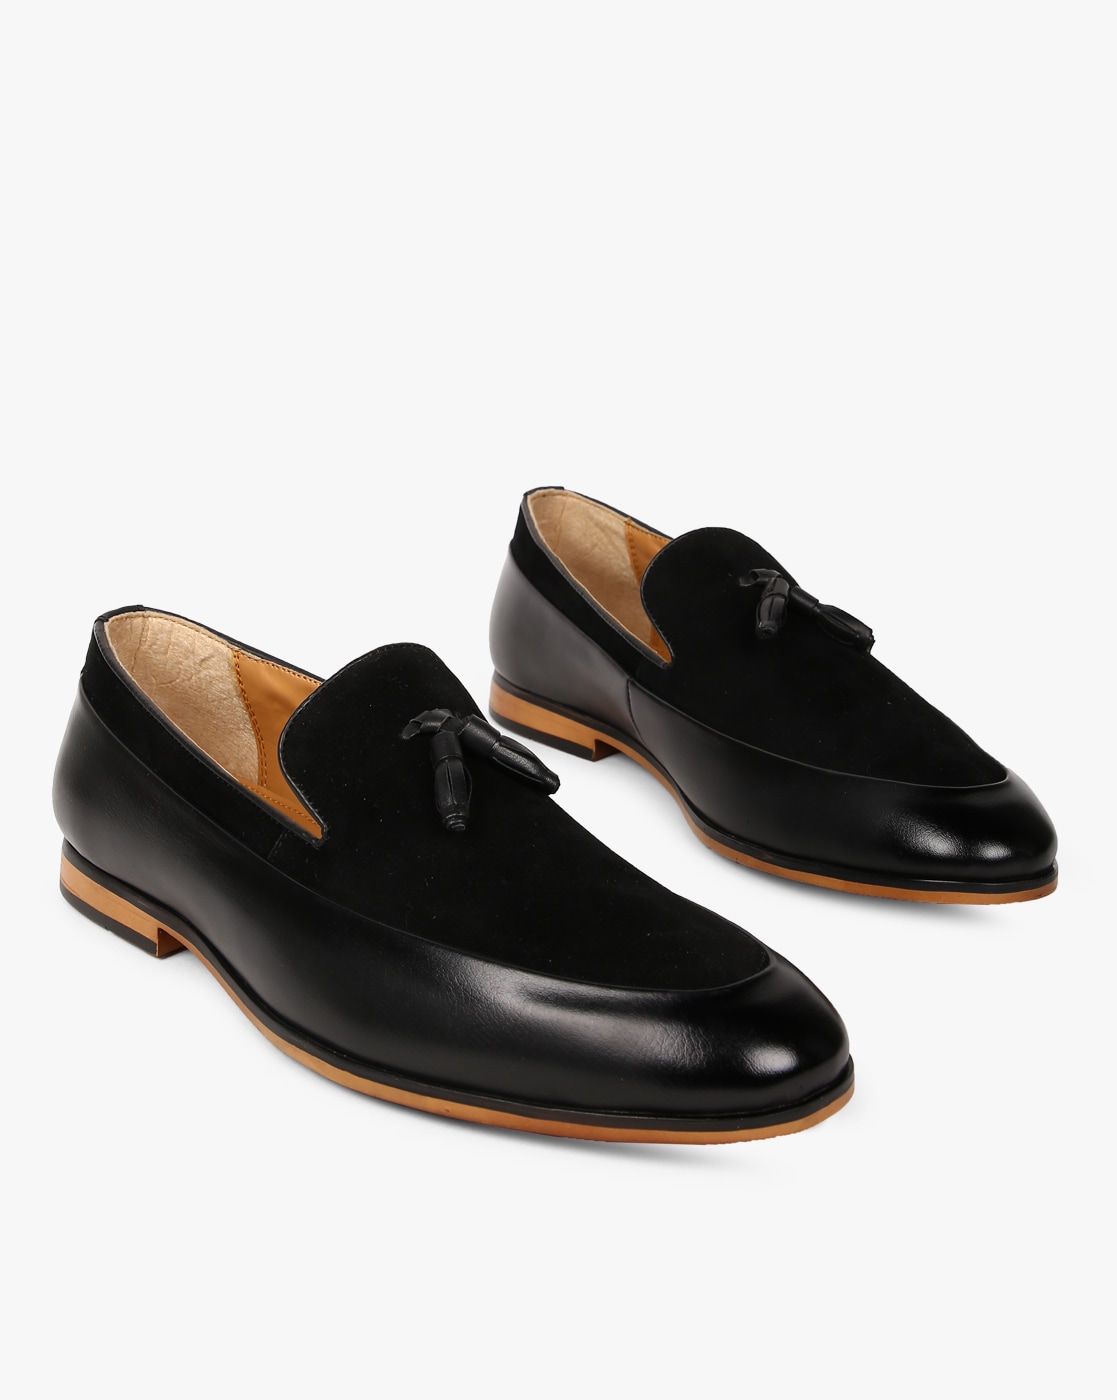 slip on formal shoes men